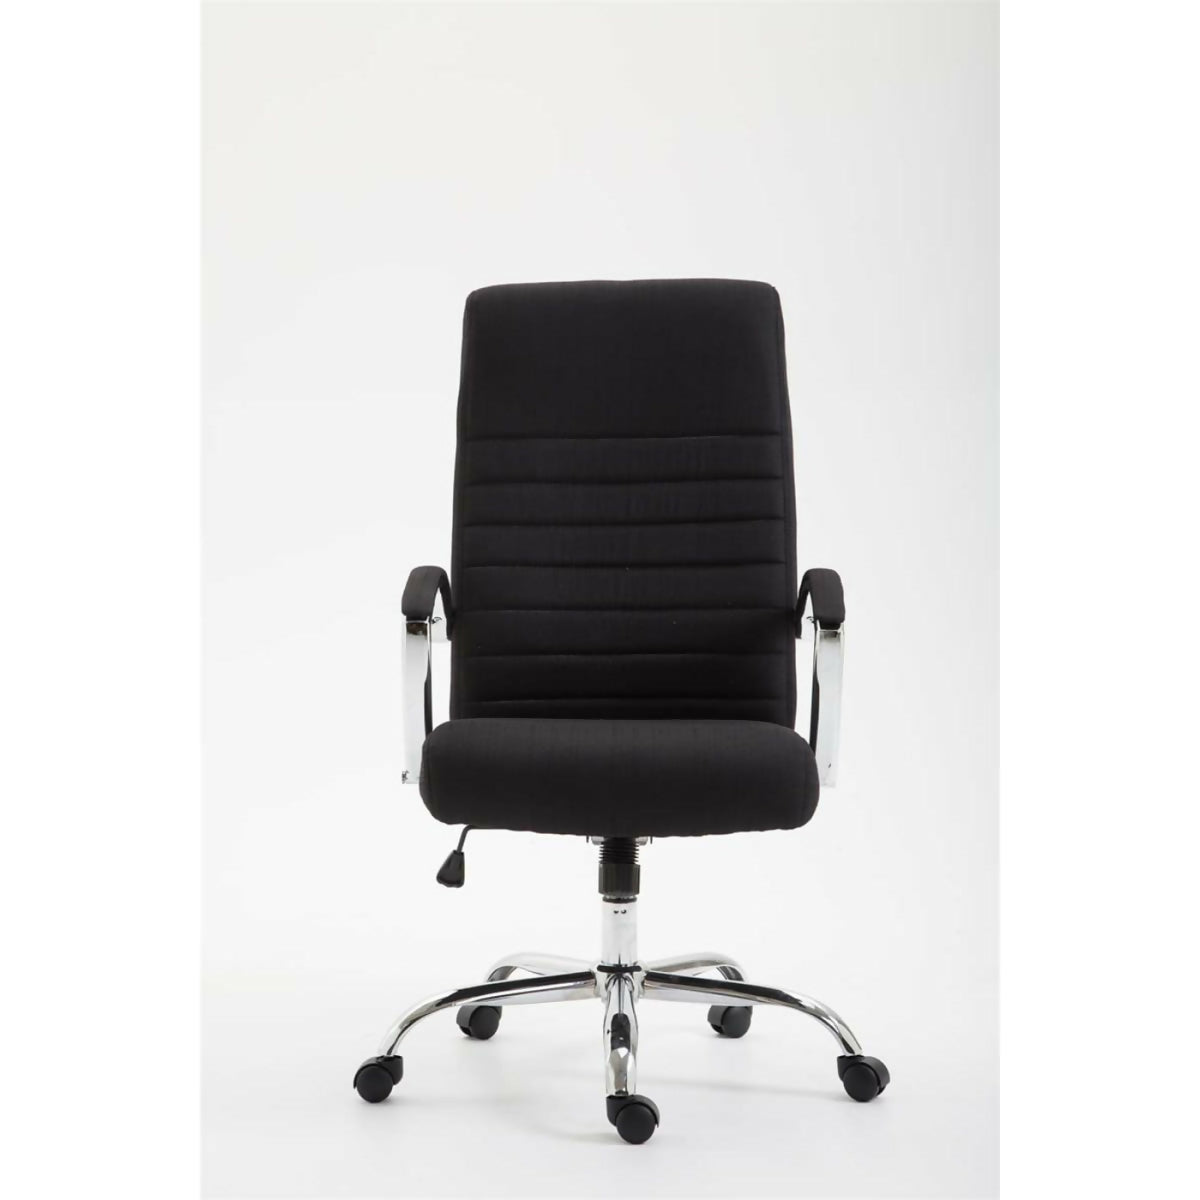 Valais office armchair - Black fabric